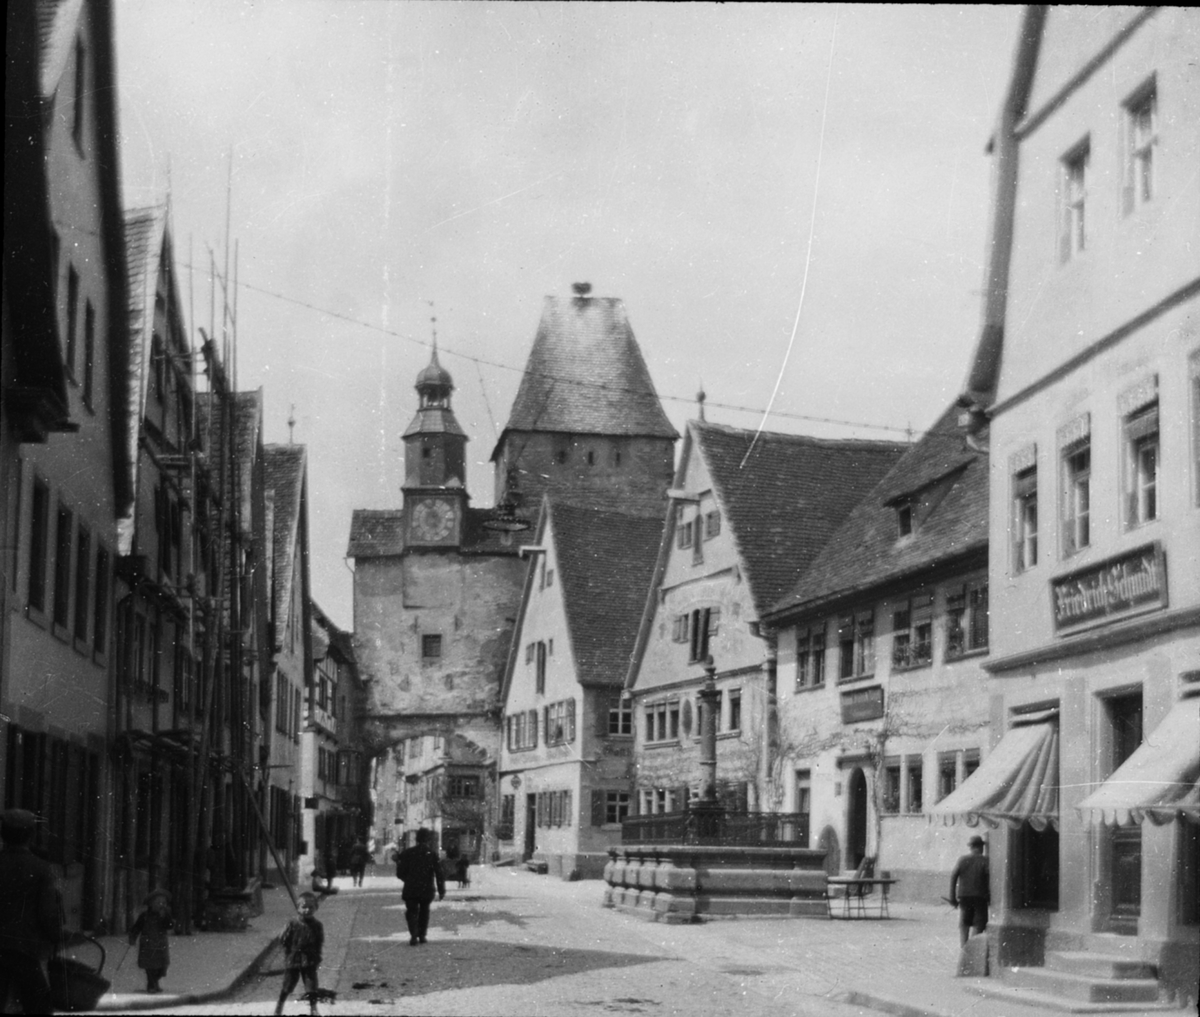 Skioptikonbild med motiv från Rothenburg. Torn i stadsmuren.
Bilden har förvarats i kartong märkt: Rothenburg I. 1901.